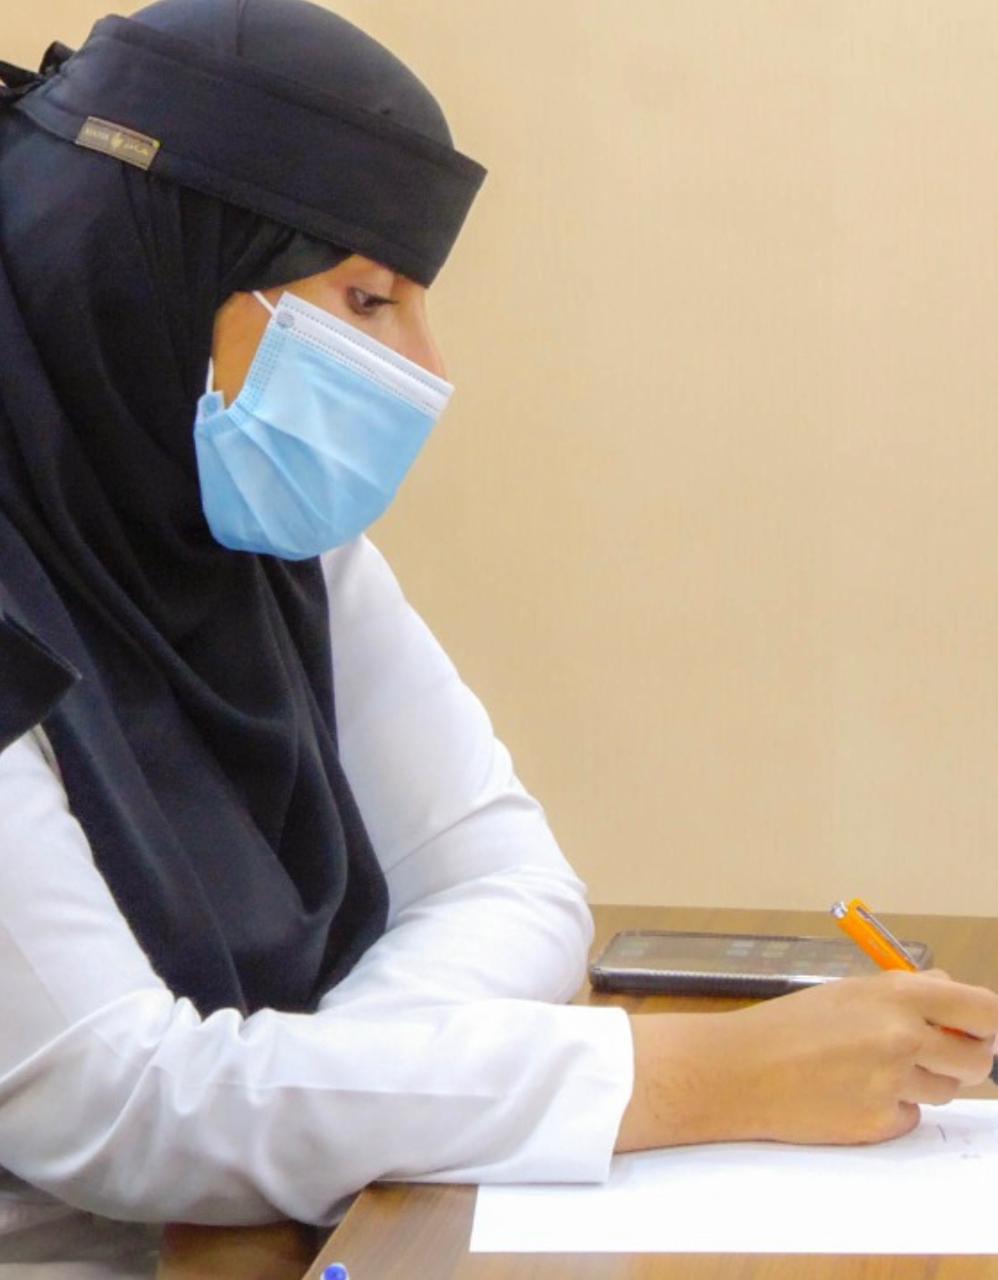 ” العسيري” أول عنصر نسائي تكلف مديرًا طبيا في مستشفى أبو عريش العام